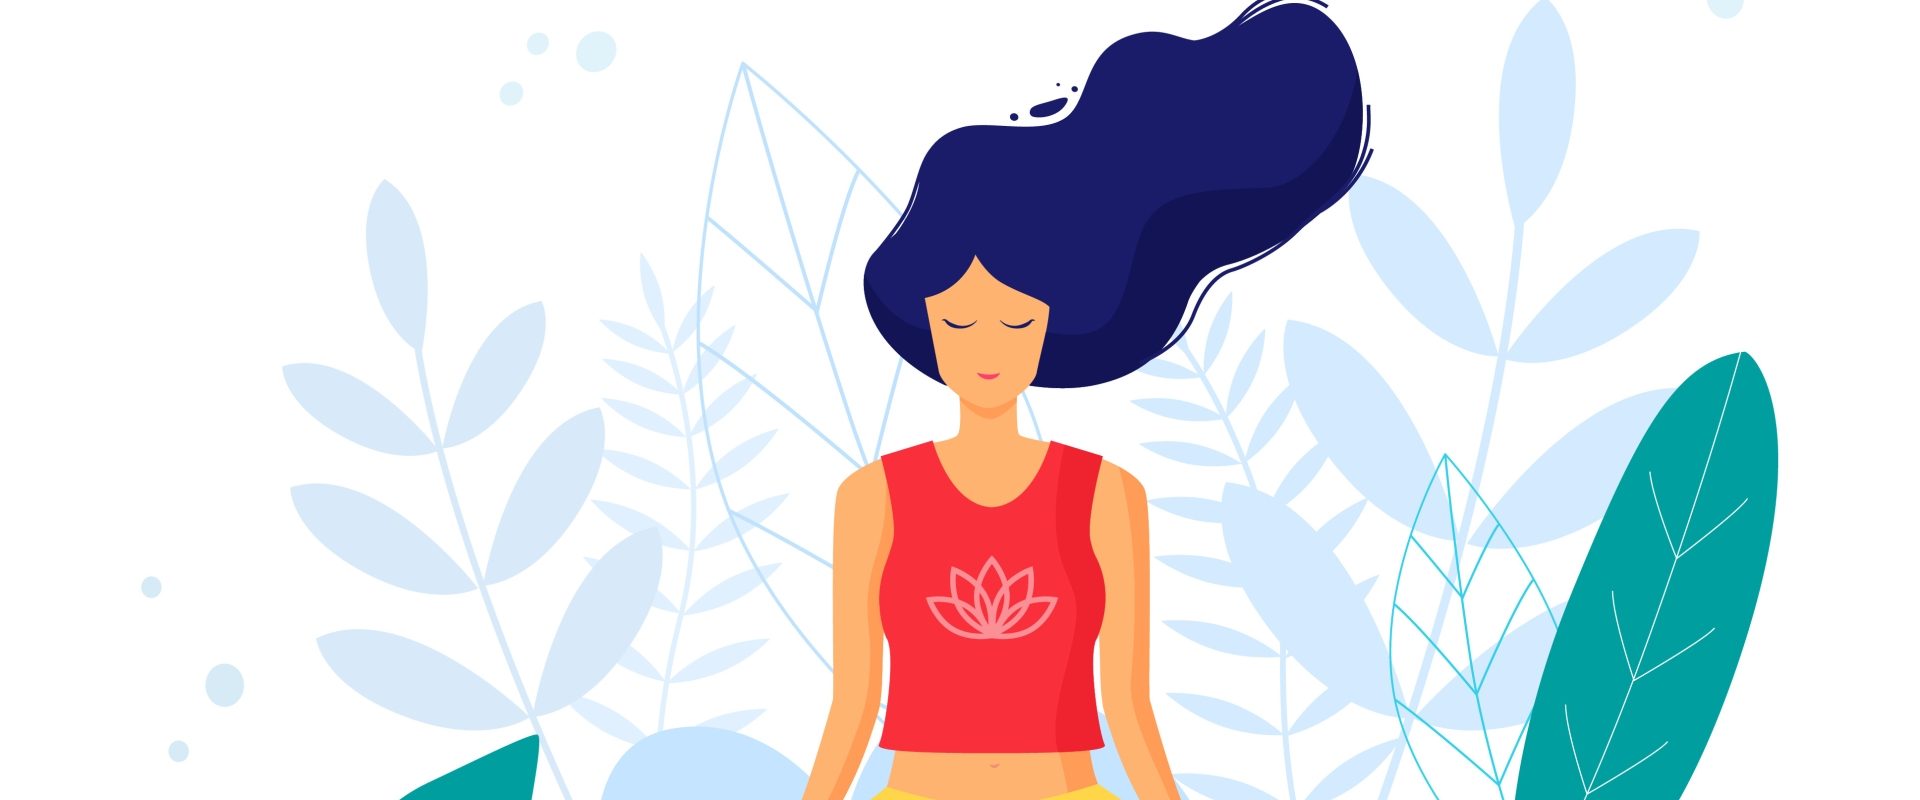 Techniki oddechowe - jak oddychać, aby rozładować stres i napięcie opowiada Agnieszka Górecka, coach oddechem i terapeutka. Ilustracja przedstawiająca medytującą kobietę w otoczeniu zieleni - koncept medytacji i technik oddychania.